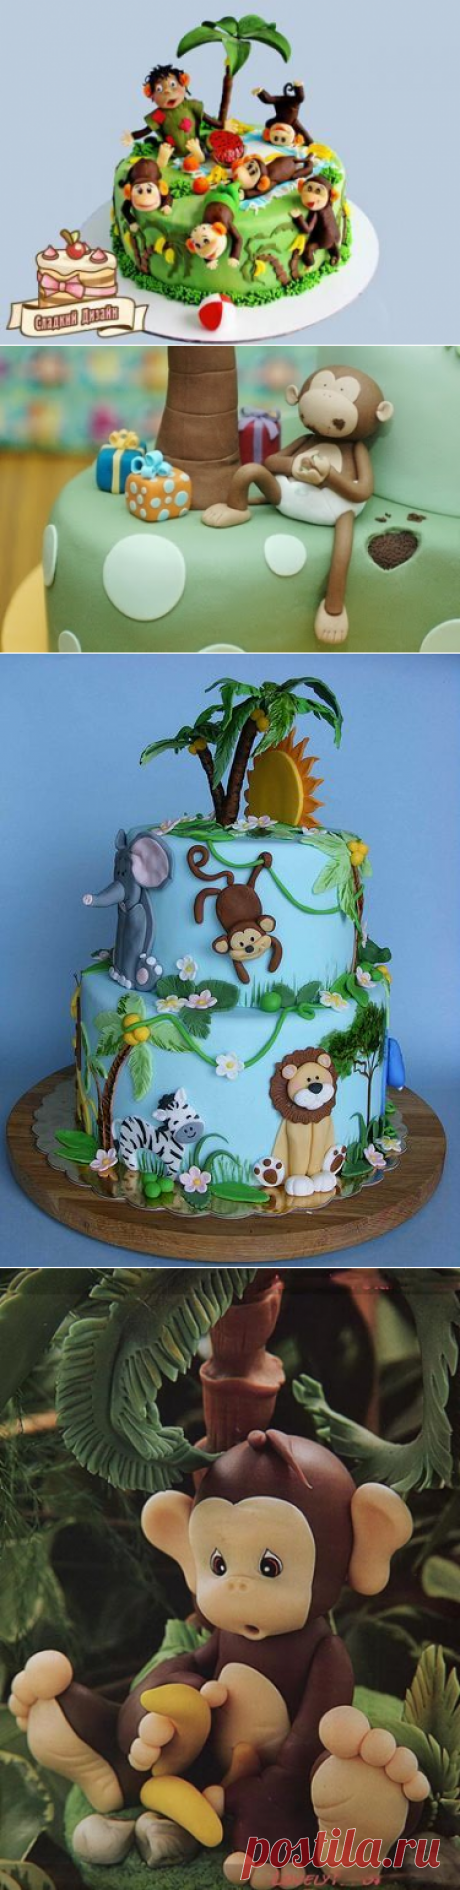 Как сделать образы обезьяны из мастики с бананами, пальмой, украсить торт?